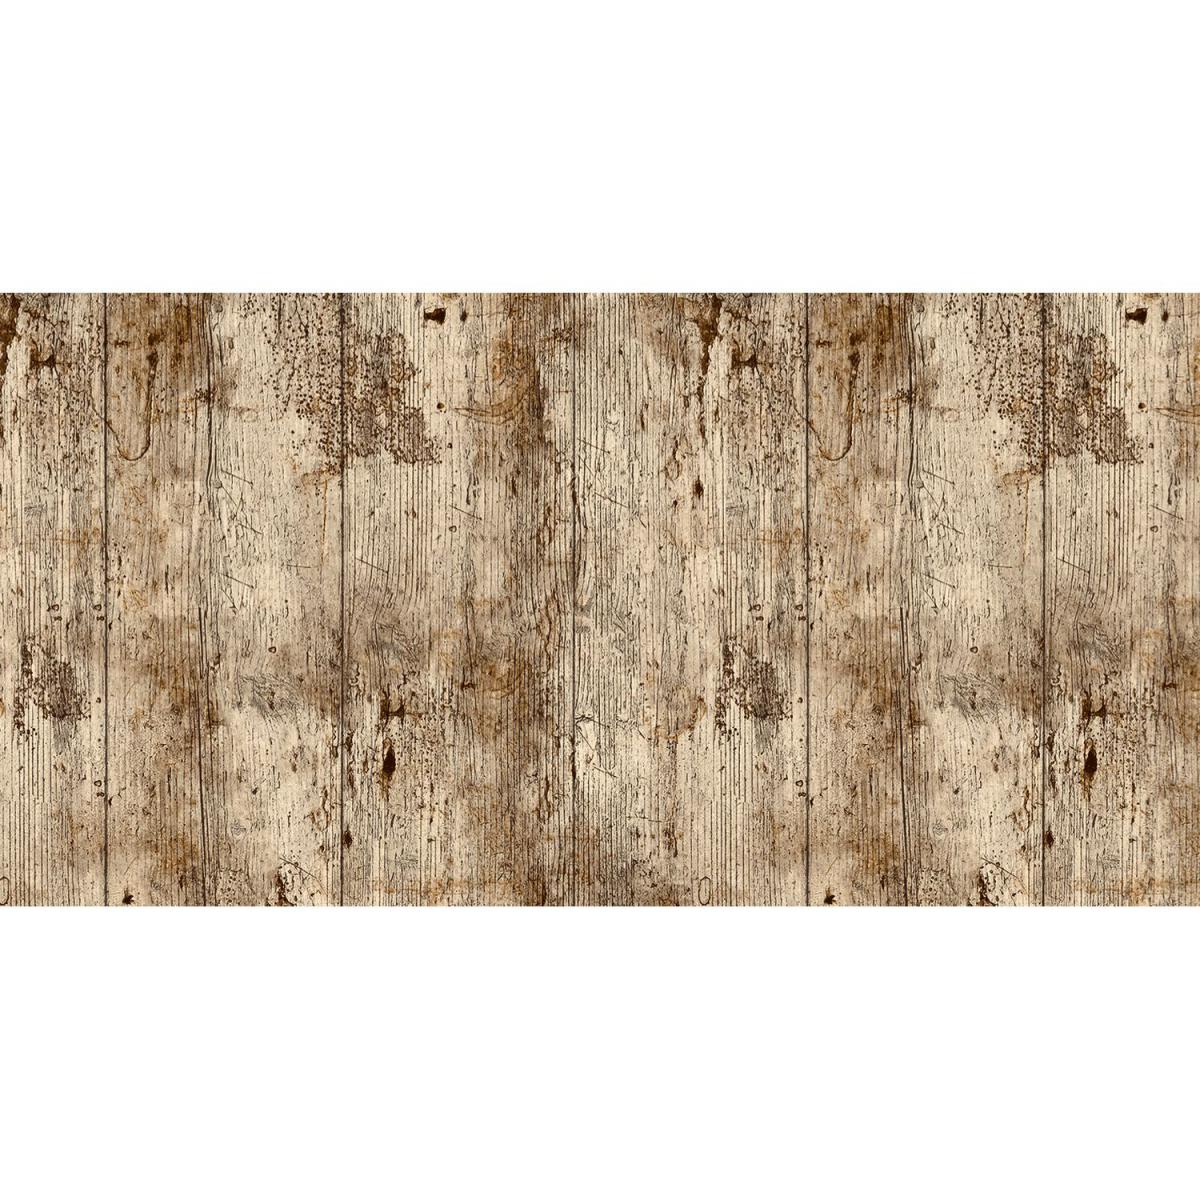 Cpm - Adhésif décoratif Bois vieilli - 200 x 45 cm - Marron - Papier peint